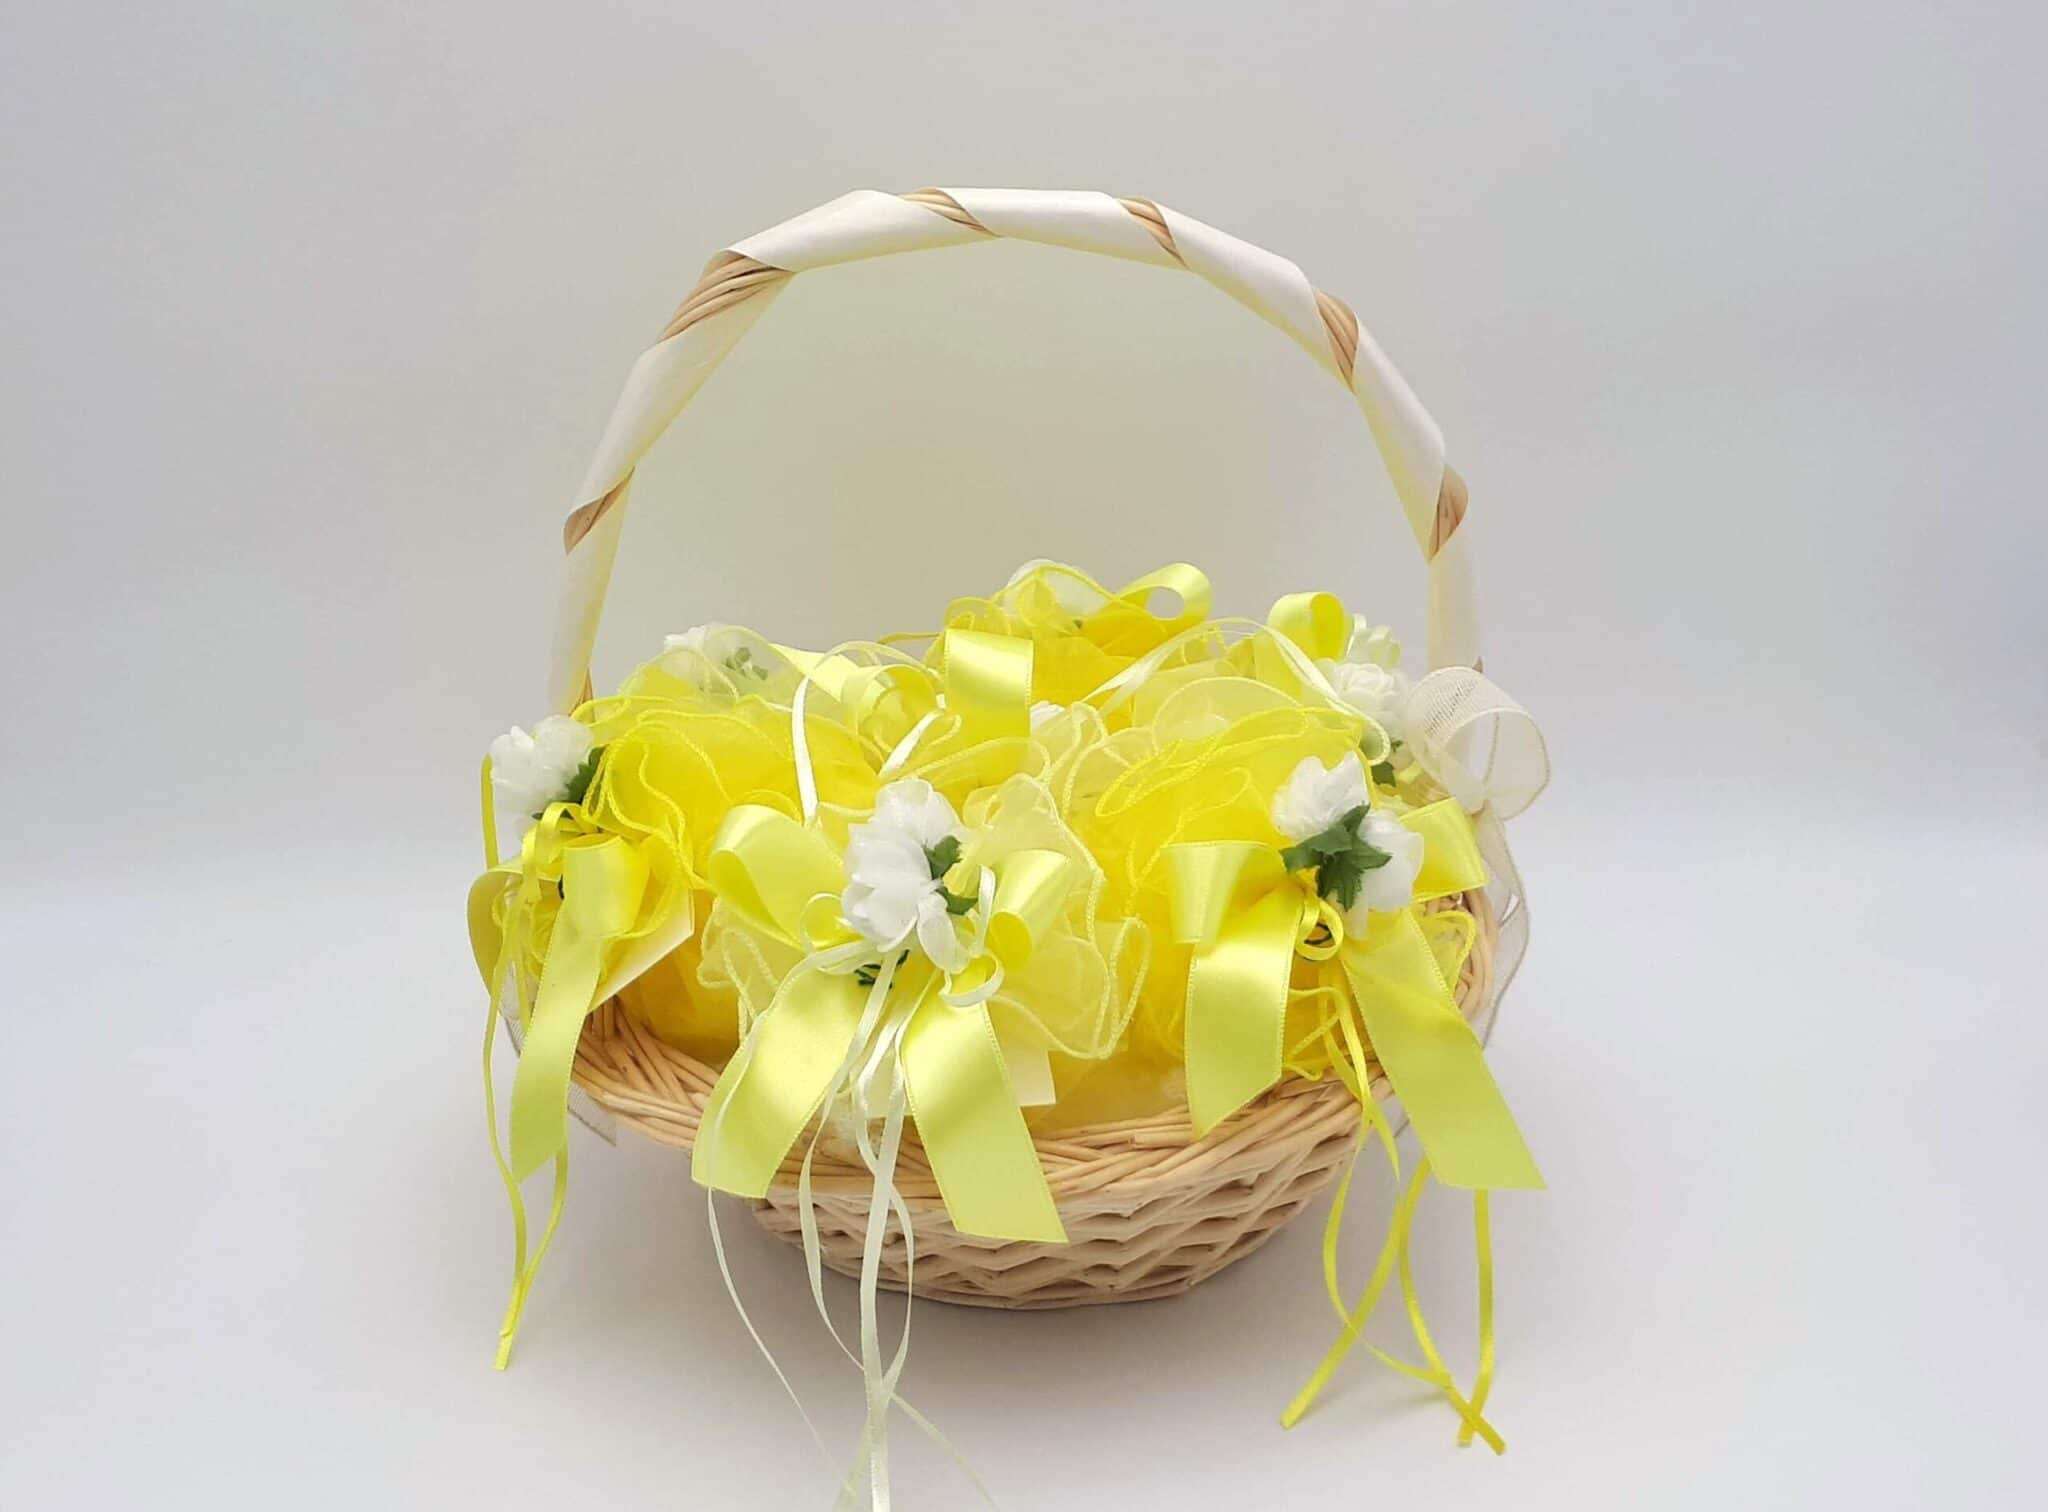 Sacchetto porta confetti prima comunione bustina melange giallo con tag